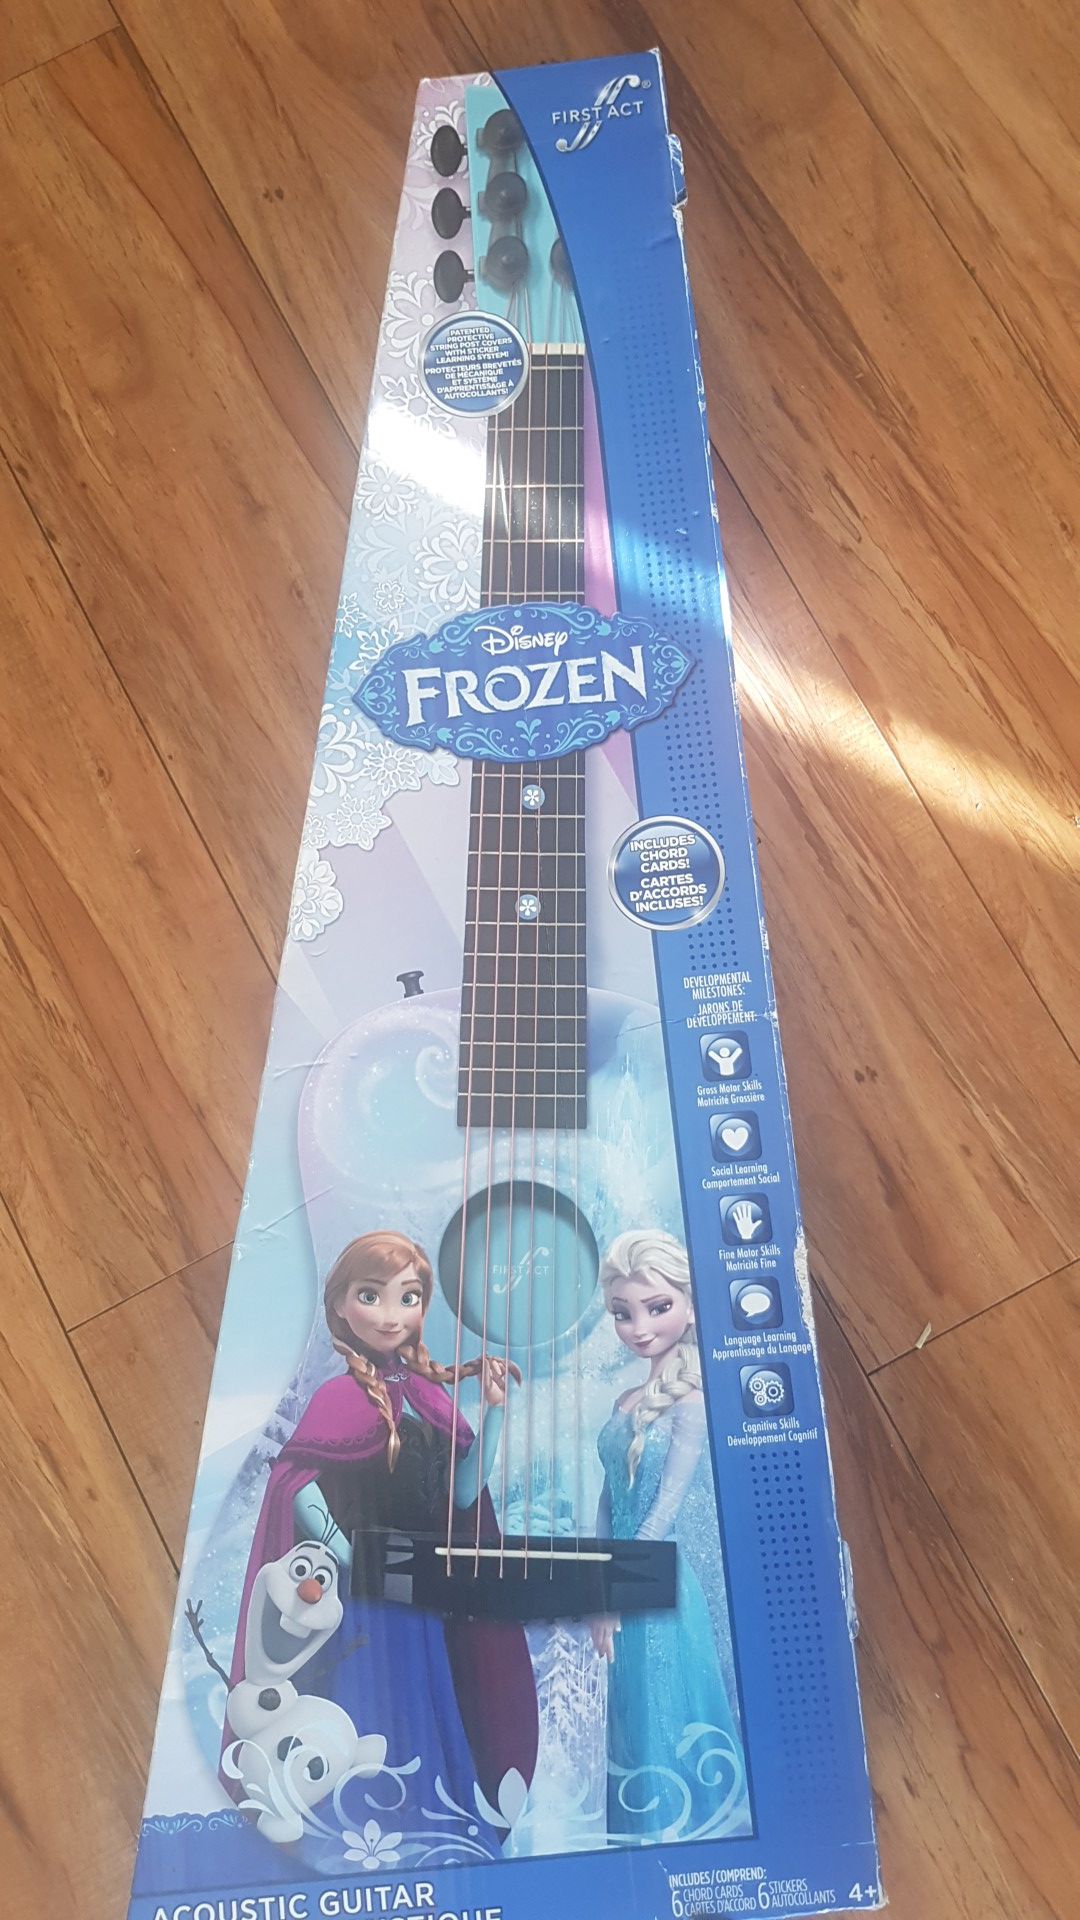 Disney's Frozen acoustic guitar